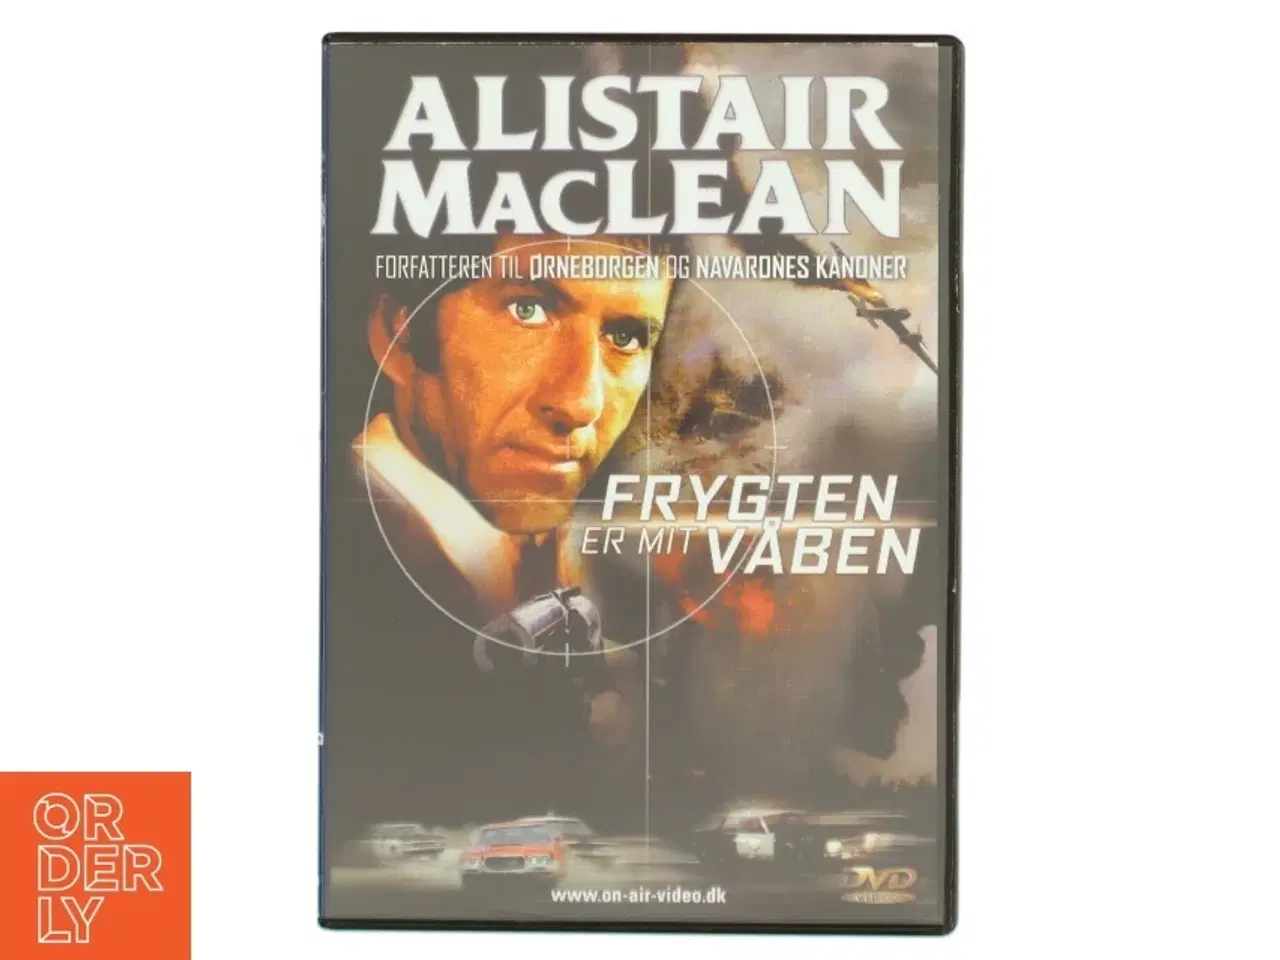 Billede 1 - Alistair MacLean actionfilm på DVD